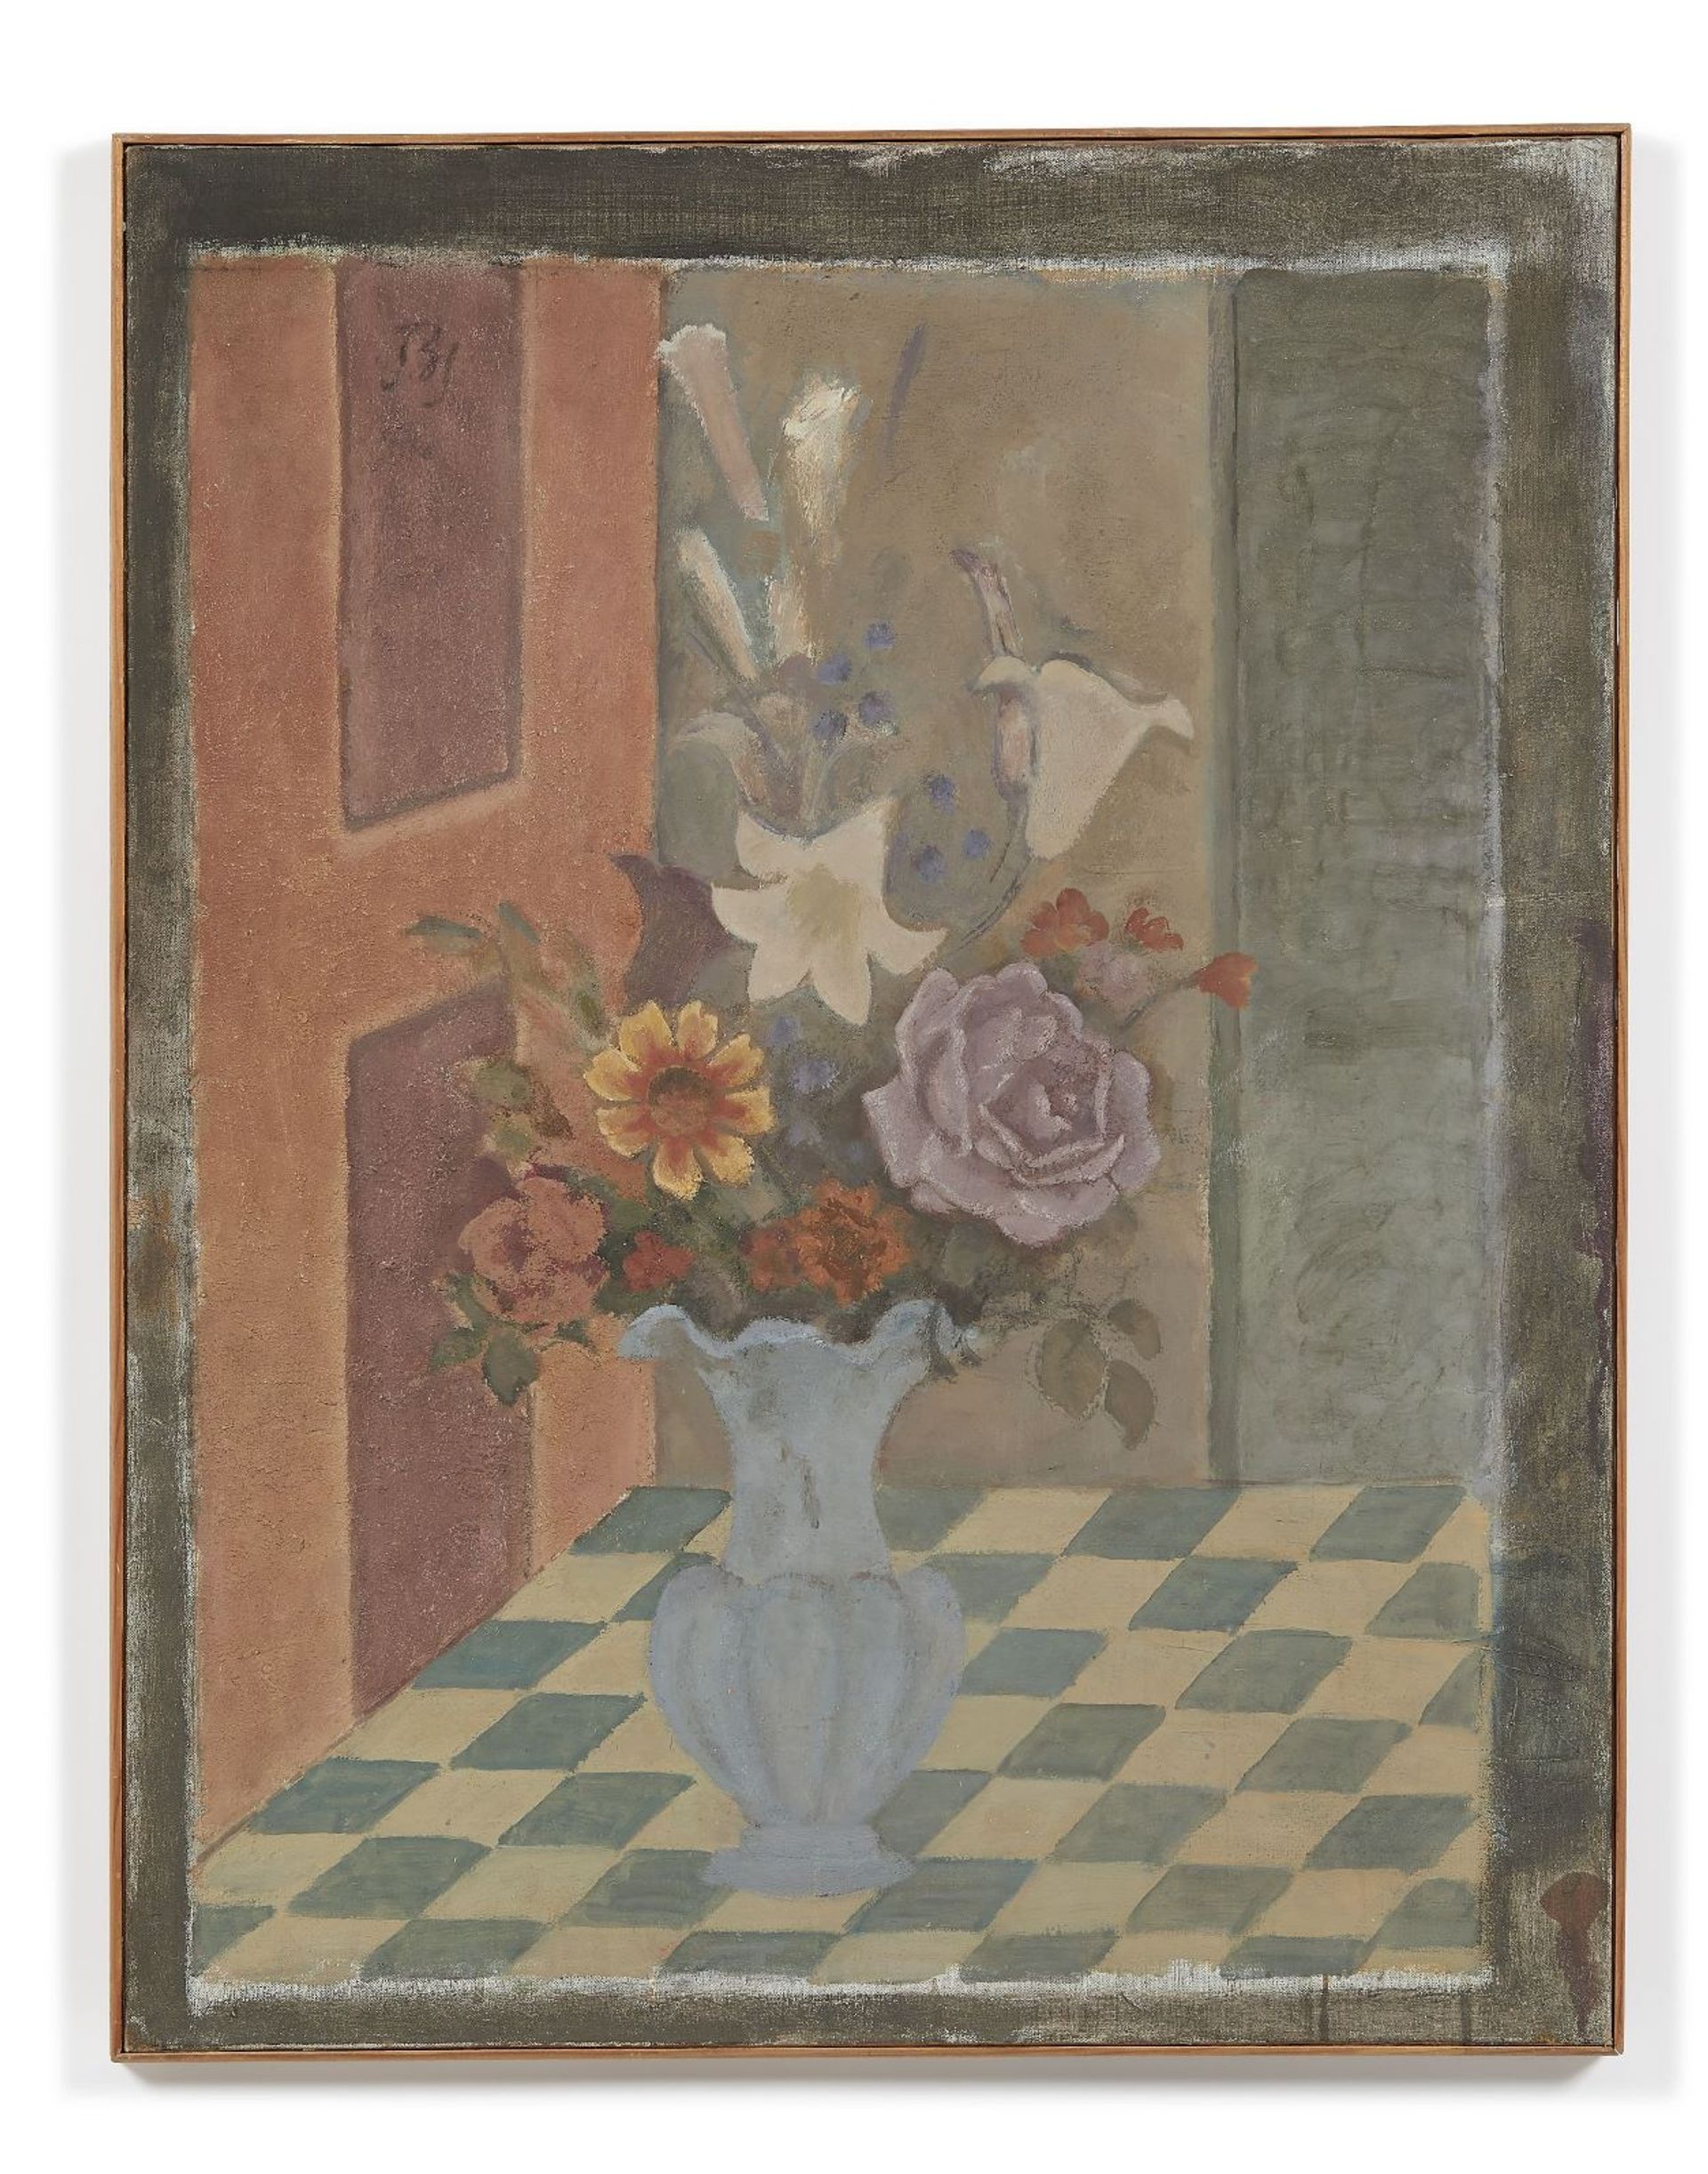 Balthus, Le vase bleu, 1963-1964, huile sur toile, 89 x 70 cm. Courtesy Artcurial, D.R.